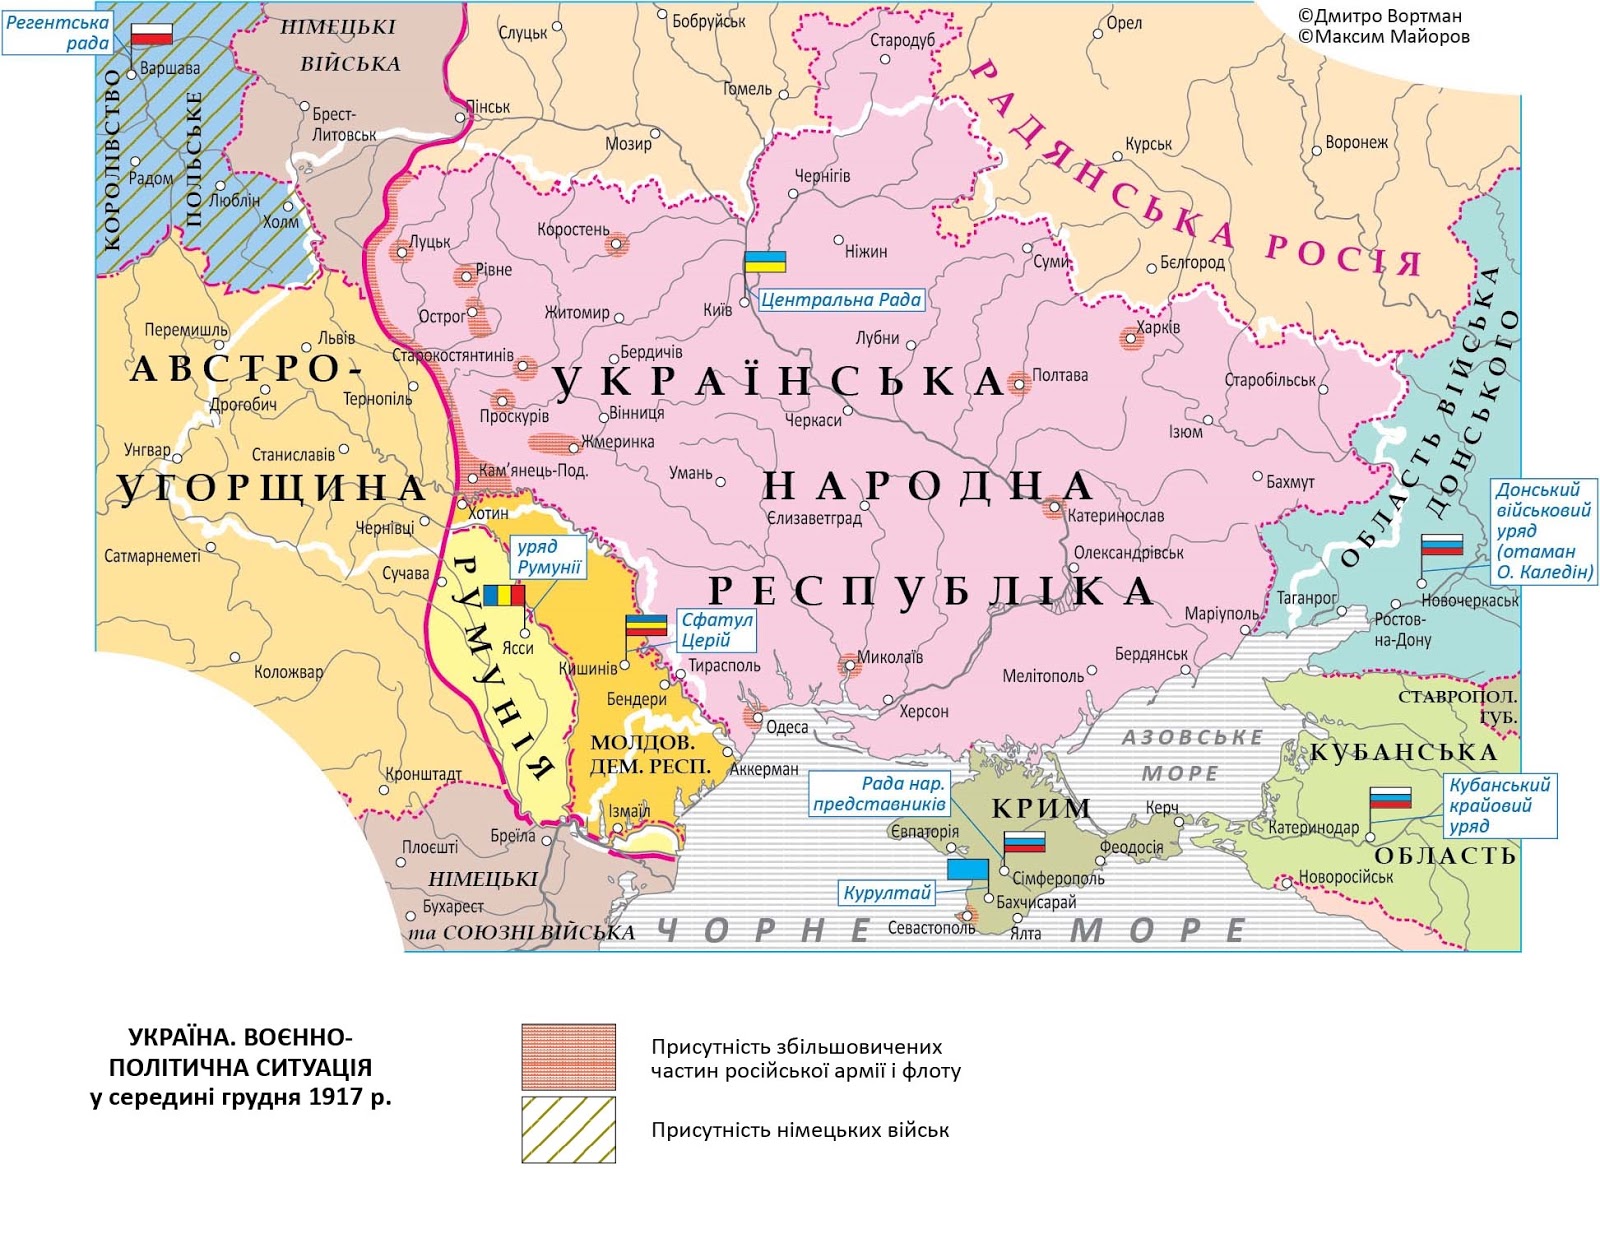 Границы украины 1922. Карта Украины 1917 года. Границы Украины до 1917. Территория Украины до 1917 года. Украина в границах 1917.